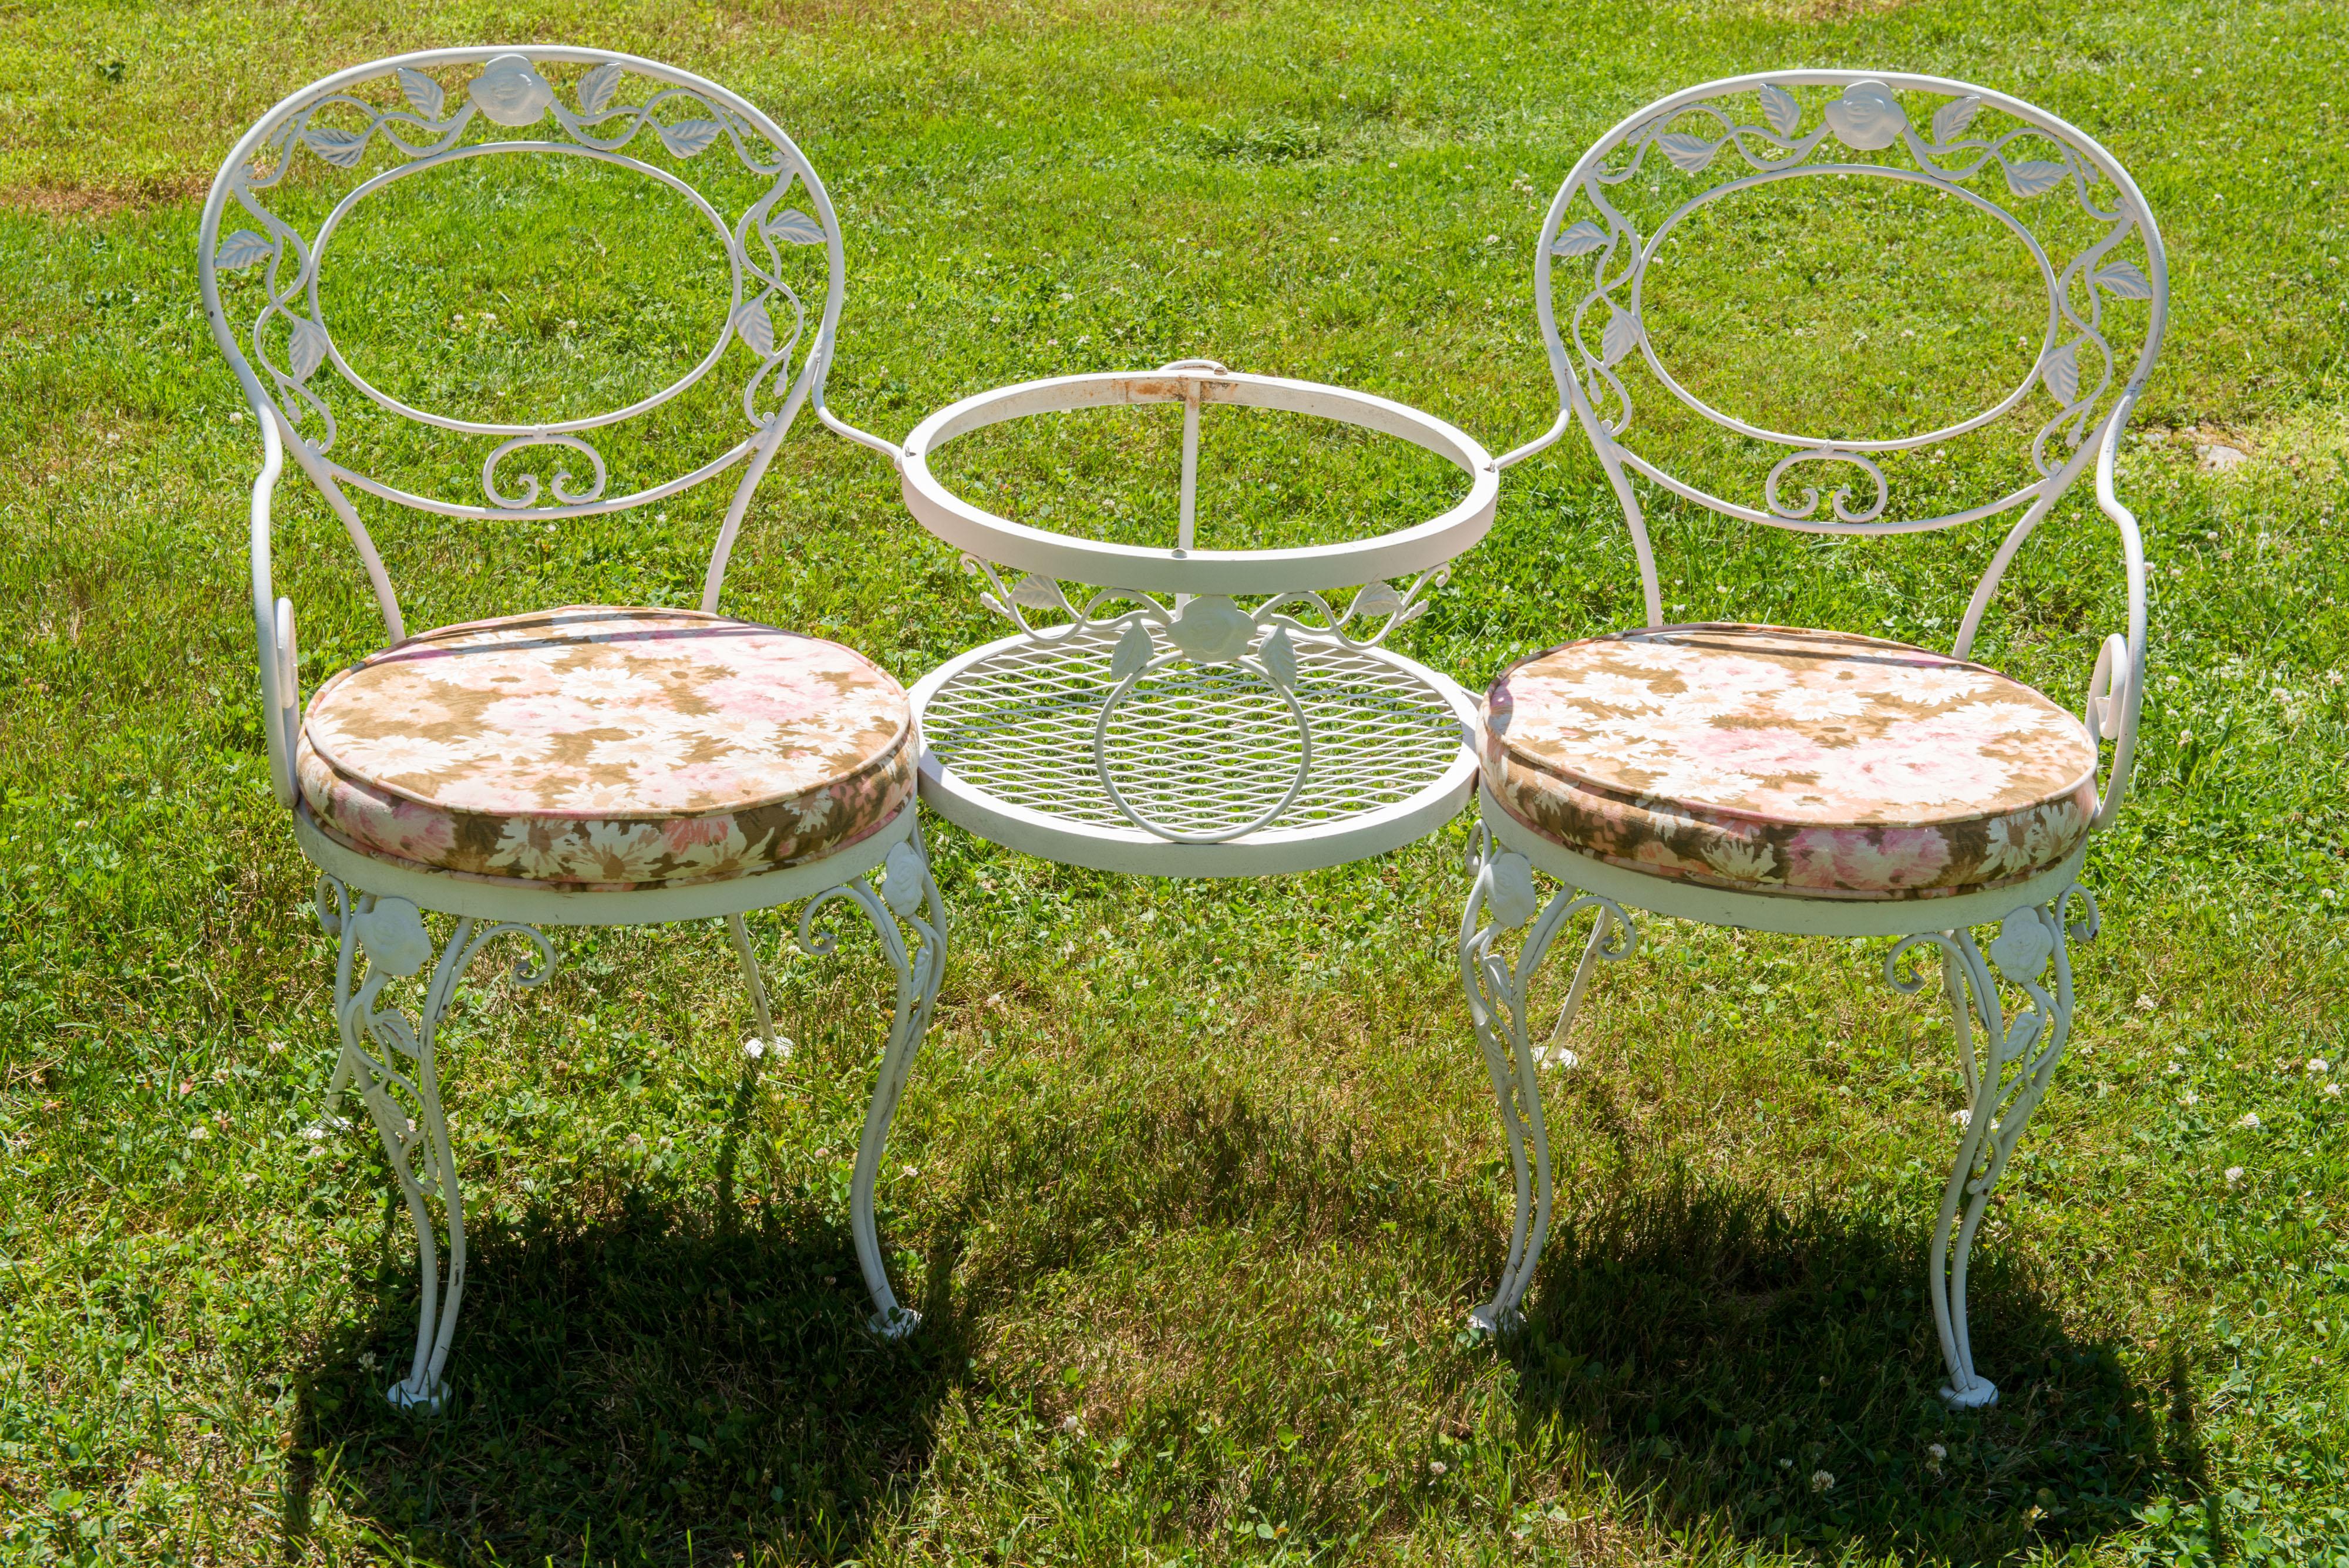 Dies ist die klassische Woodard Chantilly Rose Schmiedeeisen Tete a Tete - ein Paar von befestigten Sesseln mit einer kleinen runden Glasplatte Tisch zwischen ihnen. An der Rückseite des Tisches befinden sich zwei Eisenringe zur Aufnahme eines